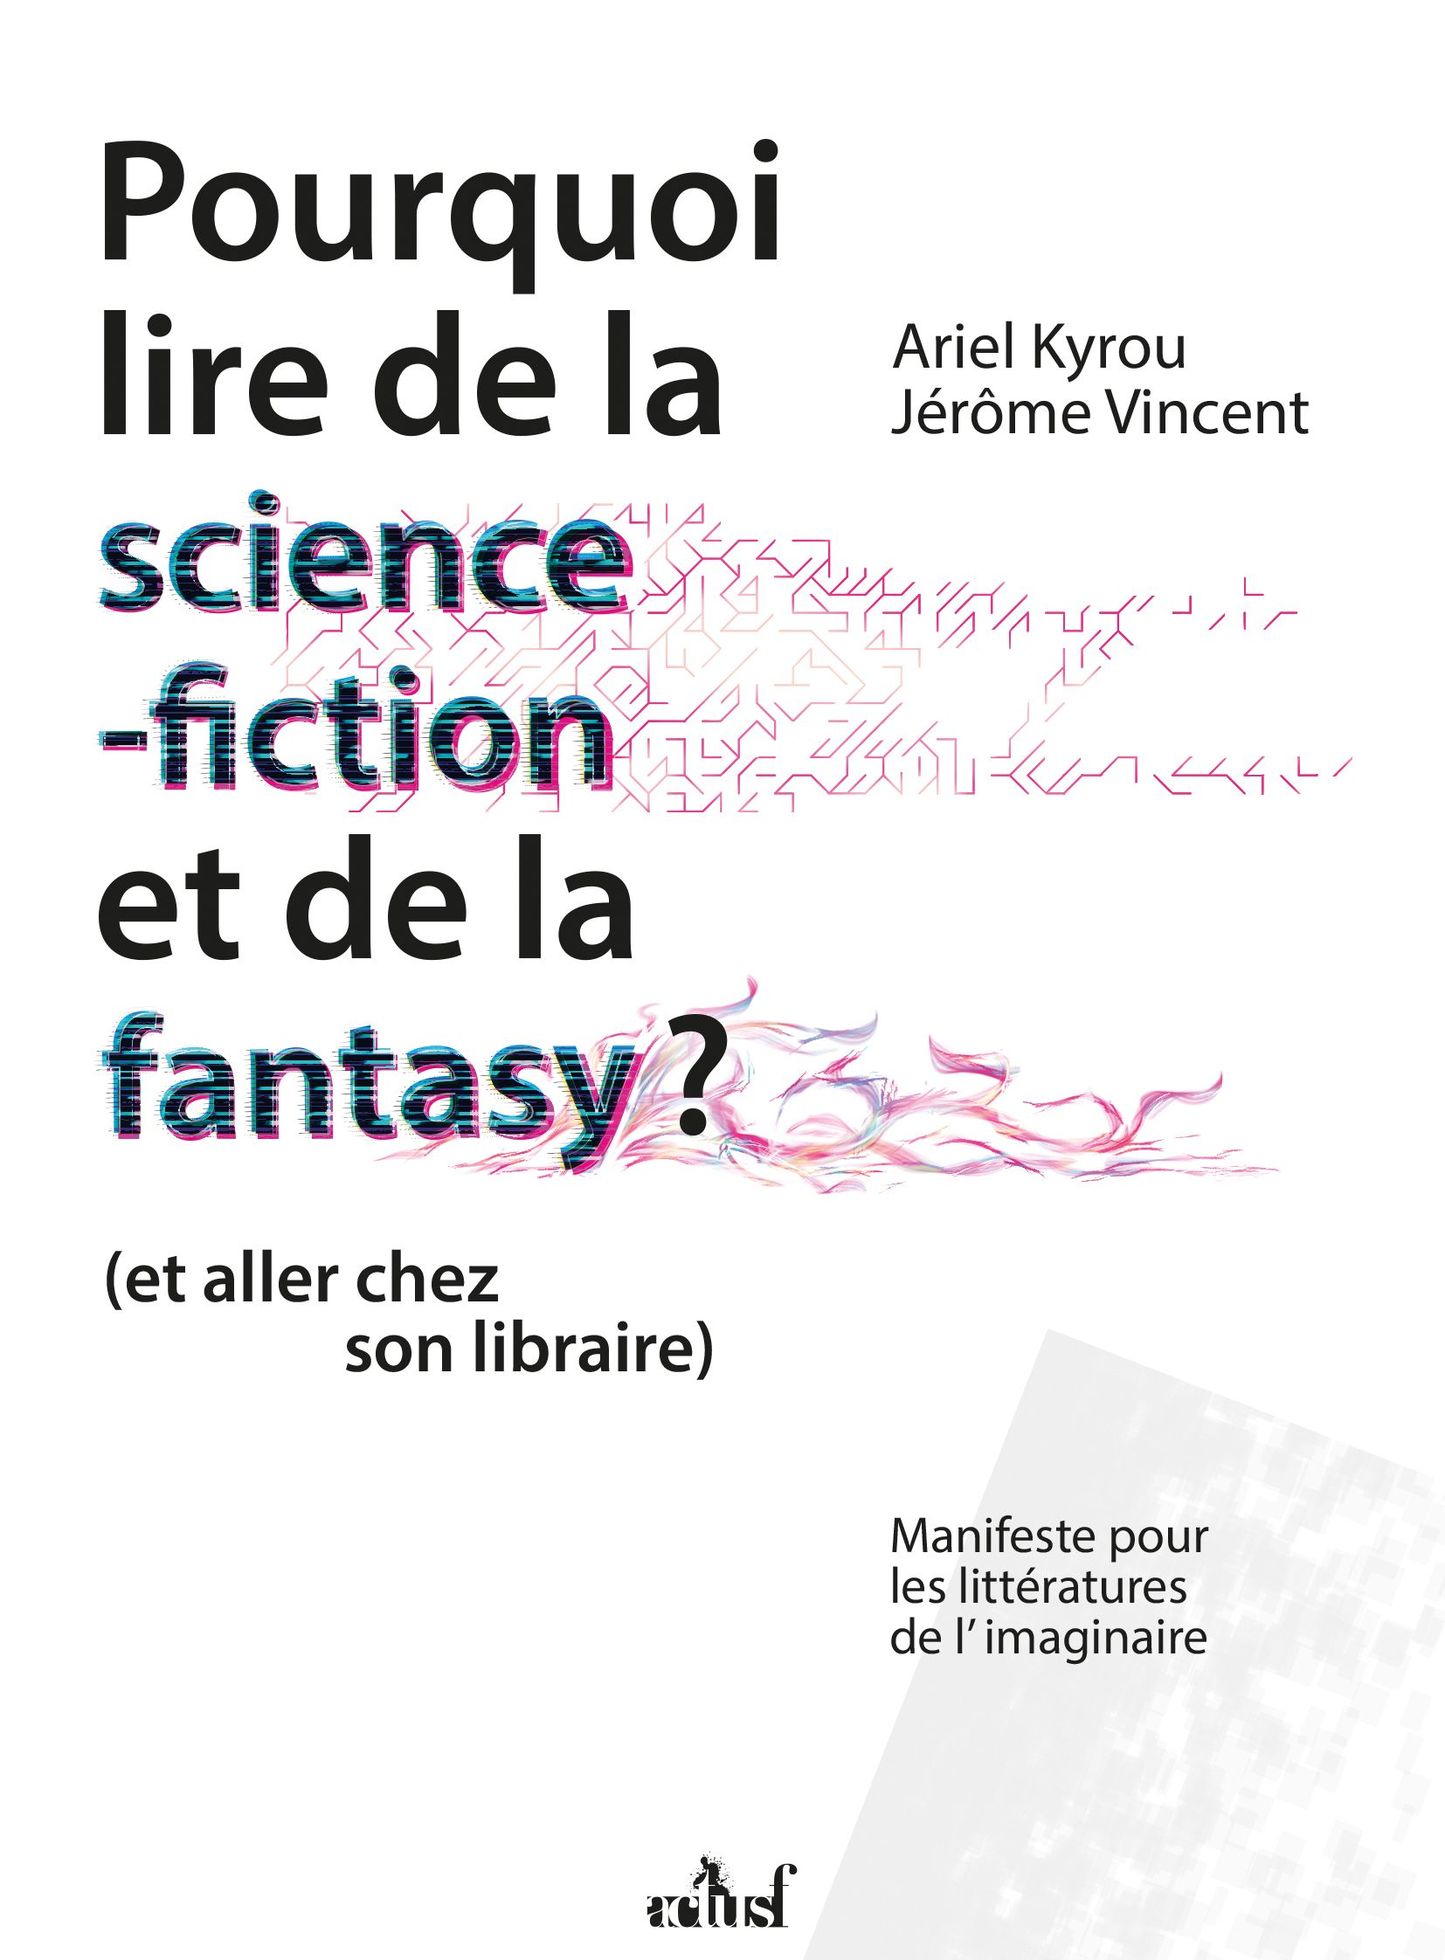 Pourquoi lire de la science-fiction et de la fantasy ? Episode 3 - Serge Lehman, le témoin des évolutions de la SF en France.